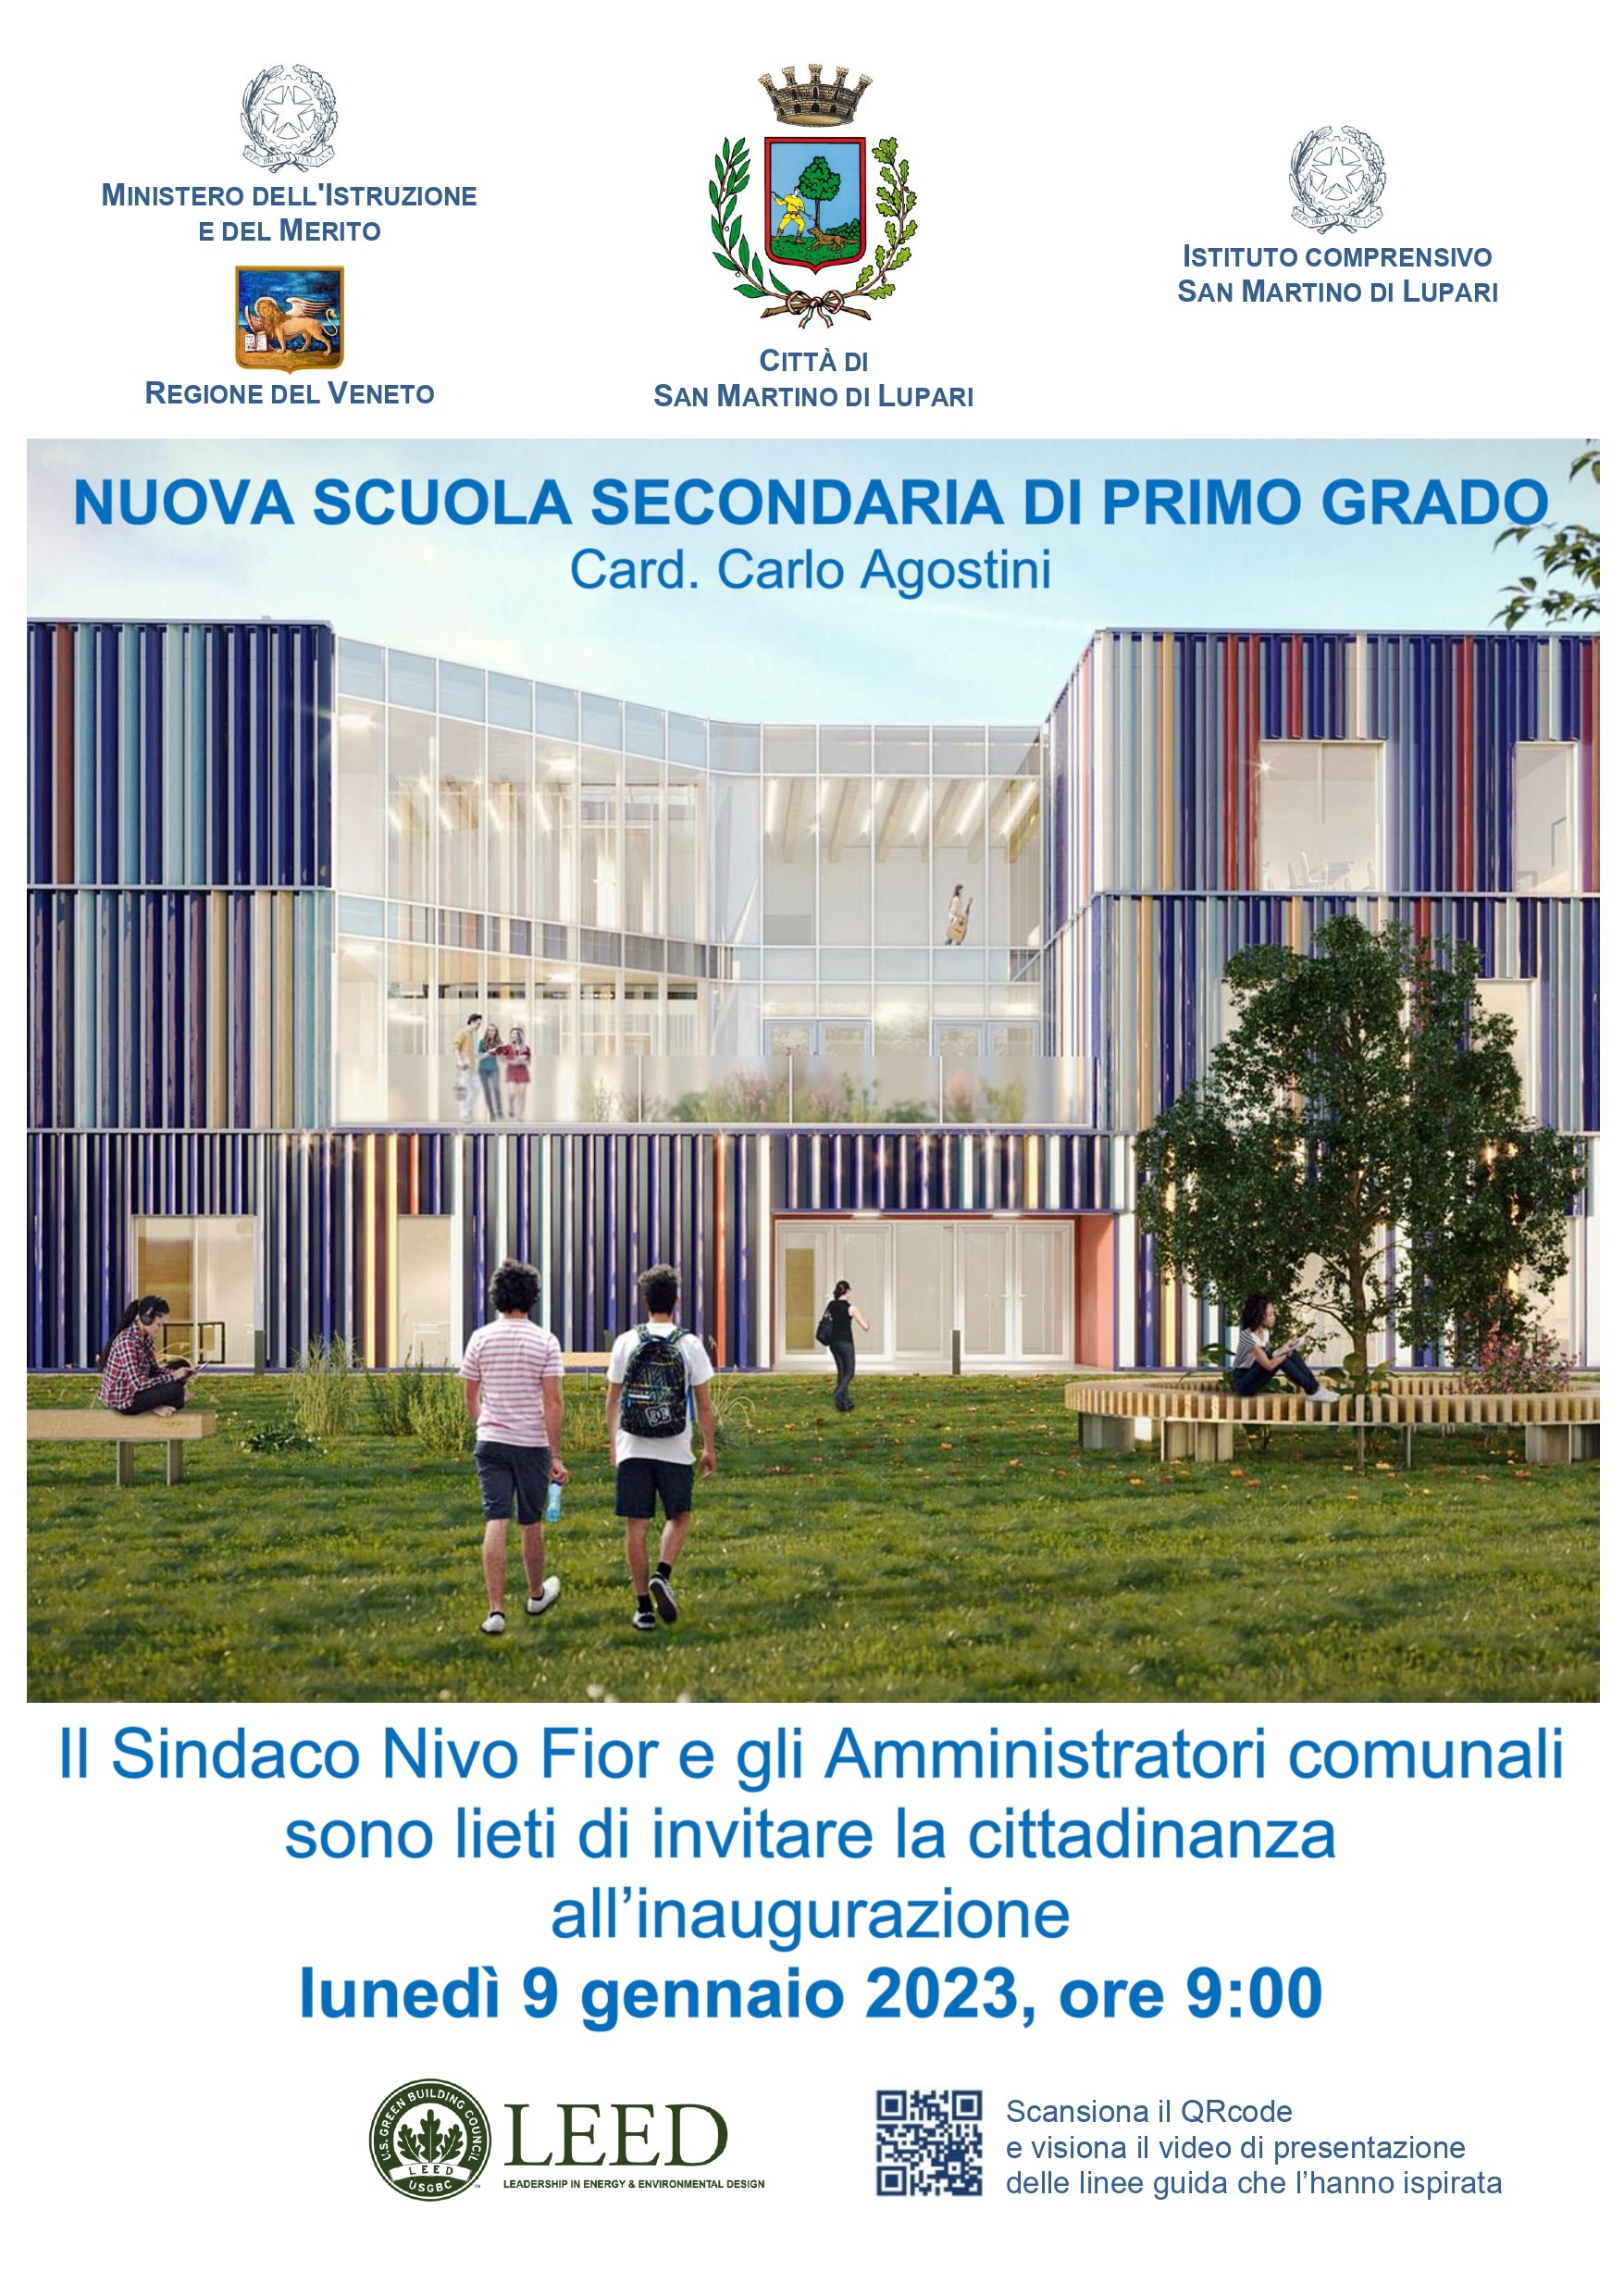 INAUGURAZIONE NUOVA SCUOLA SECONDARIA DI PRIMO GRADO – Card.Carlo Agostini